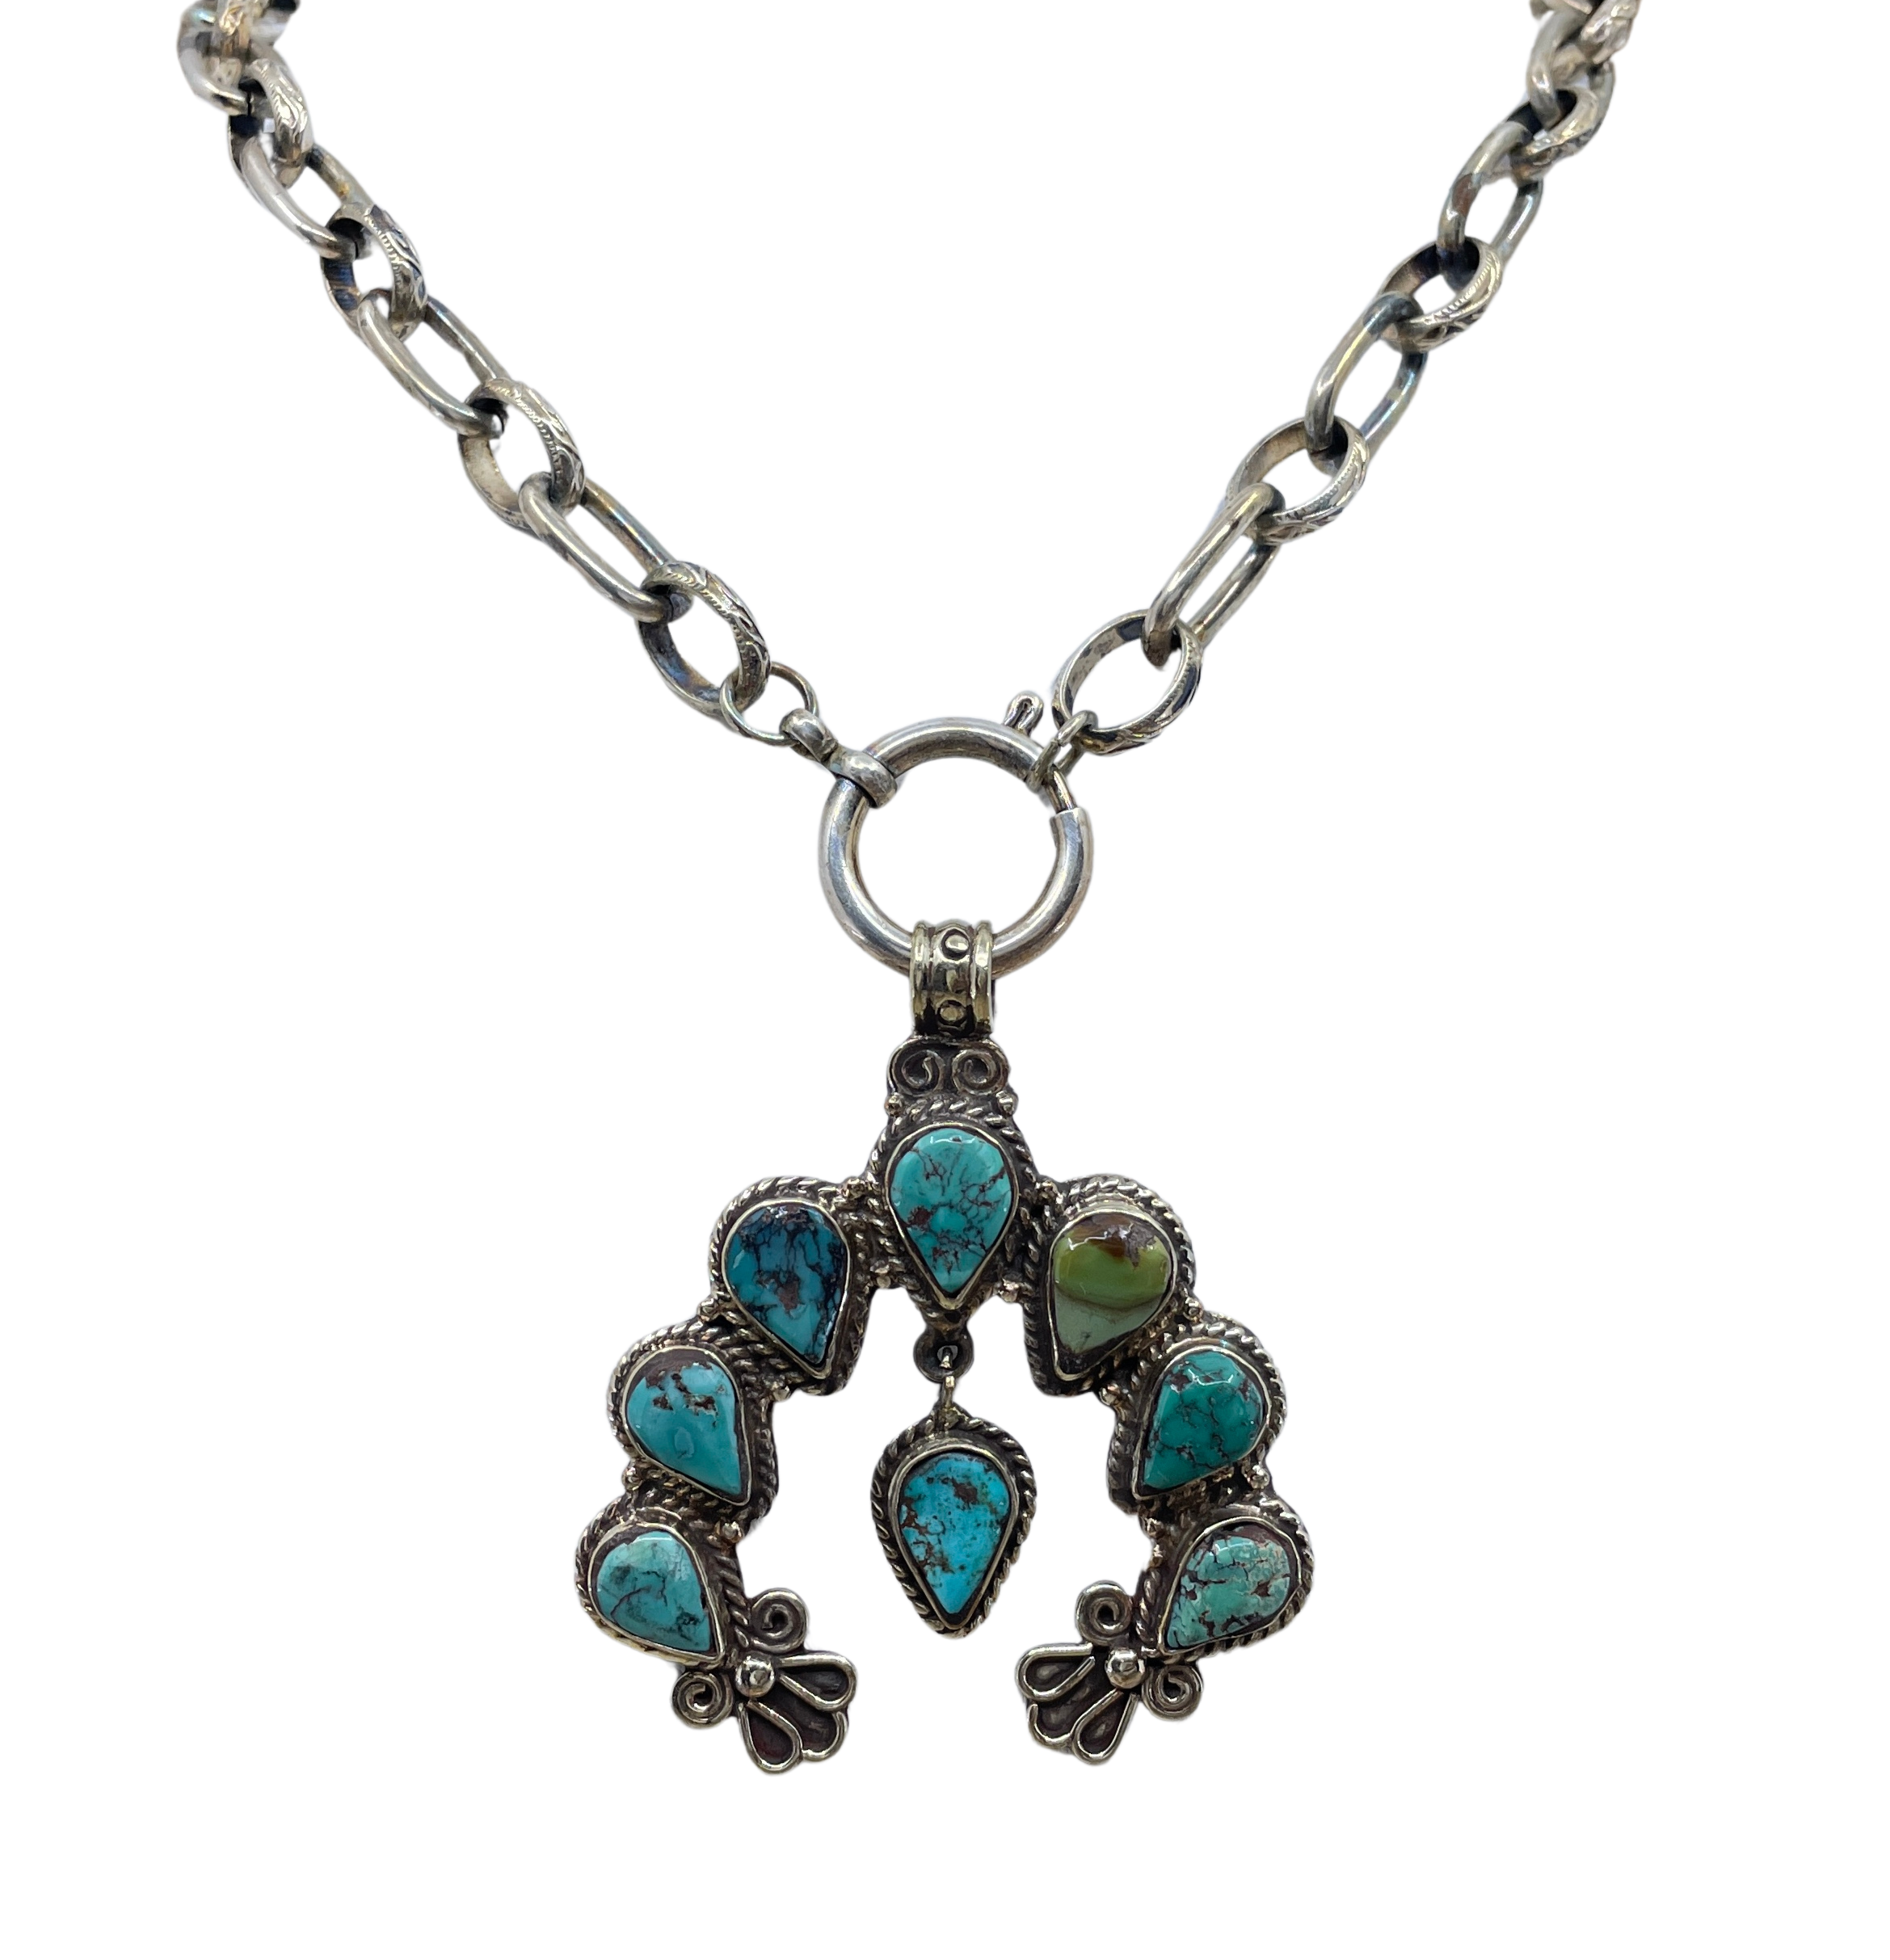 Vintage Turquoise Squash Blossom Pendant Necklace